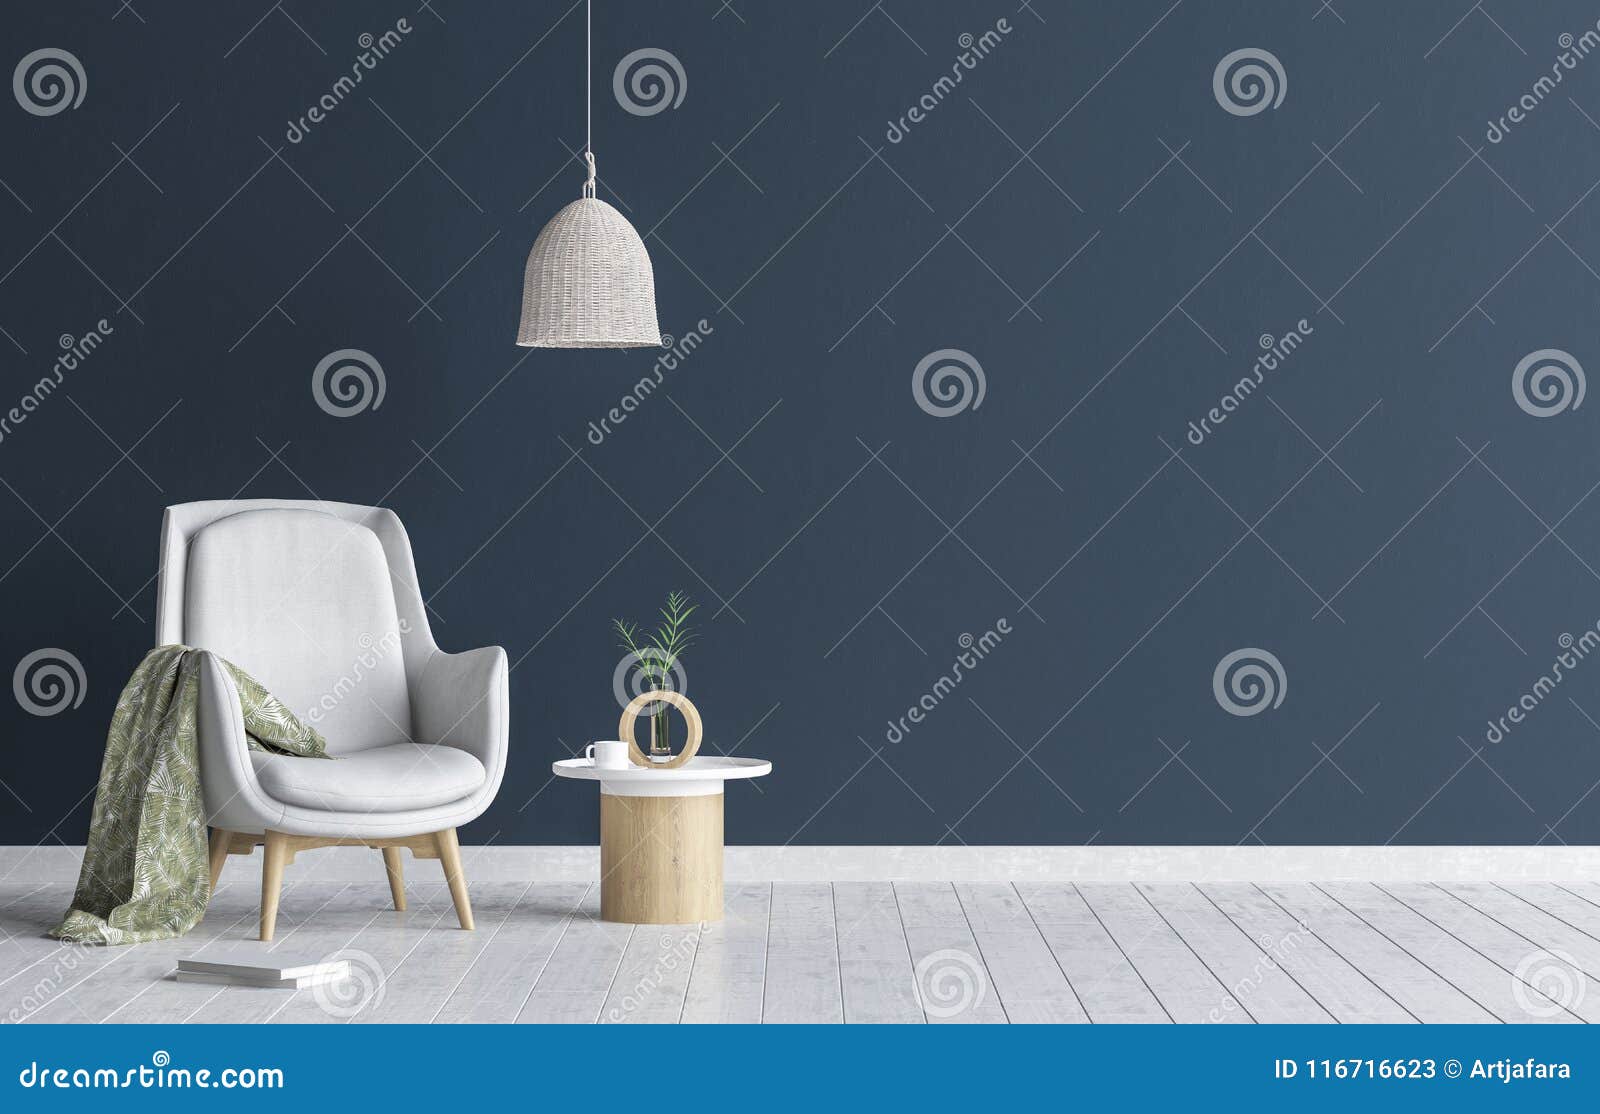 Chaise avec la lampe et la table basse dans le salon intérieur, moquerie bleu-foncé de mur vers le haut de fond